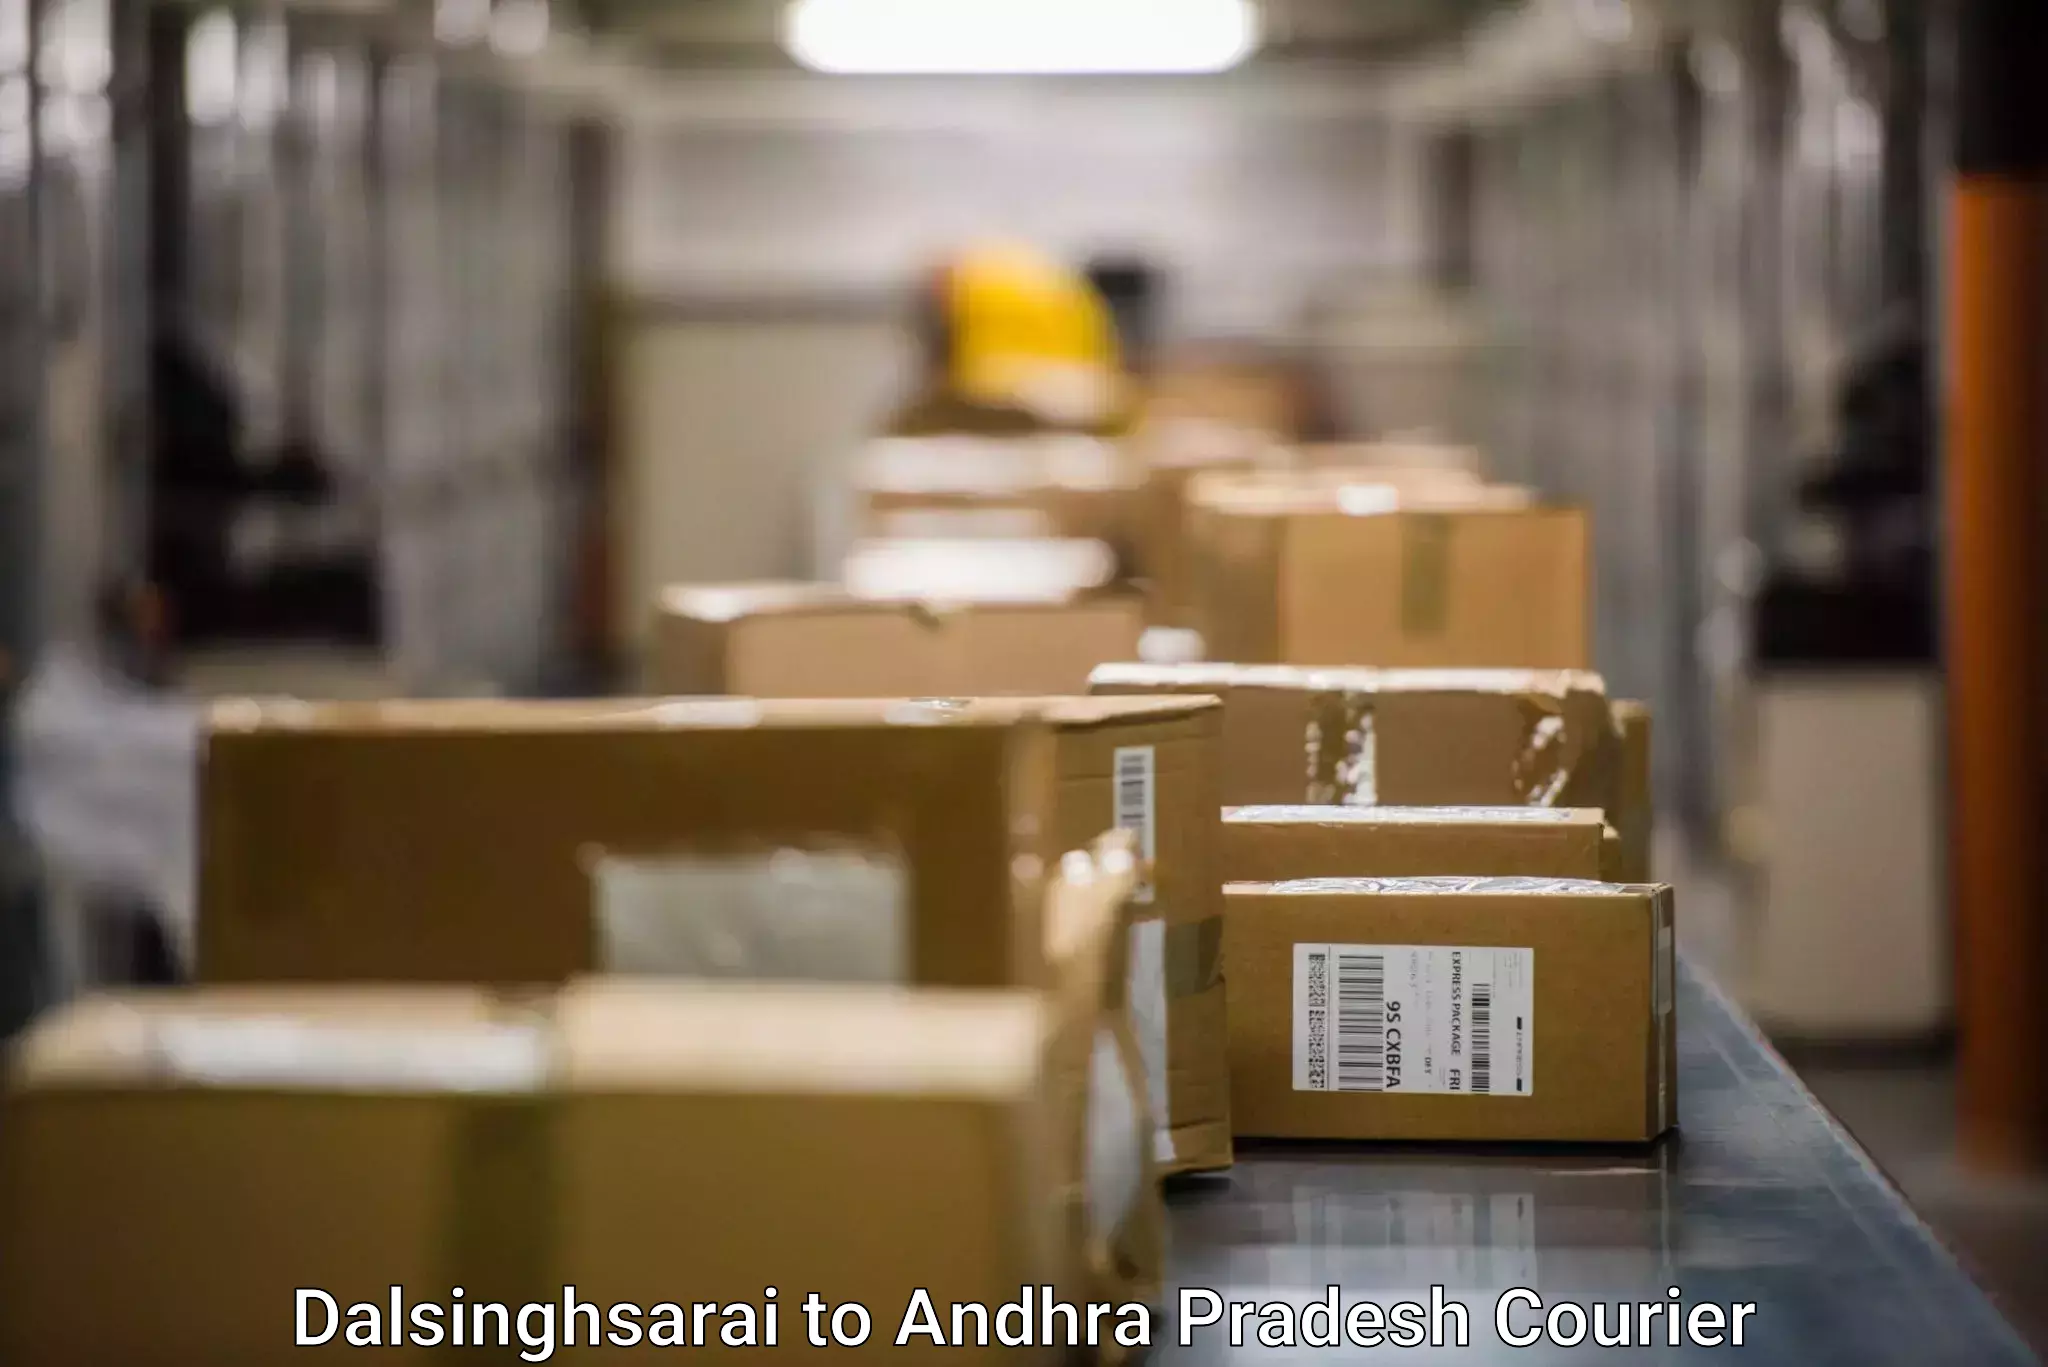 Express logistics Dalsinghsarai to Andhra Pradesh